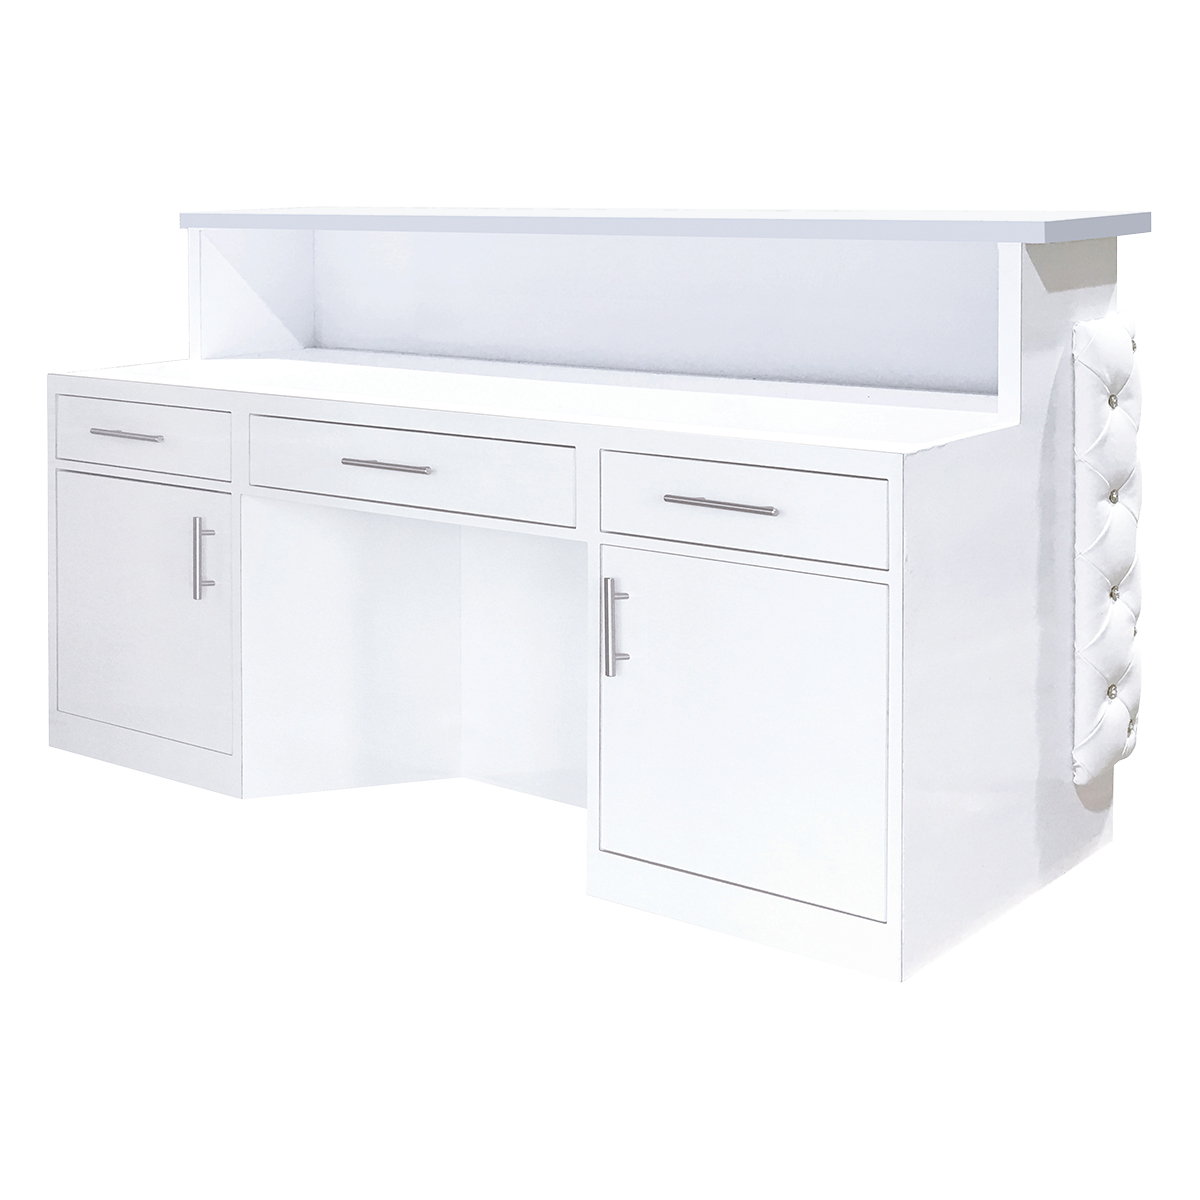 Whale Spa Valentino White Lux Tufted Reception Desk with Quartz Top |  Salon and Spa Reception Desks